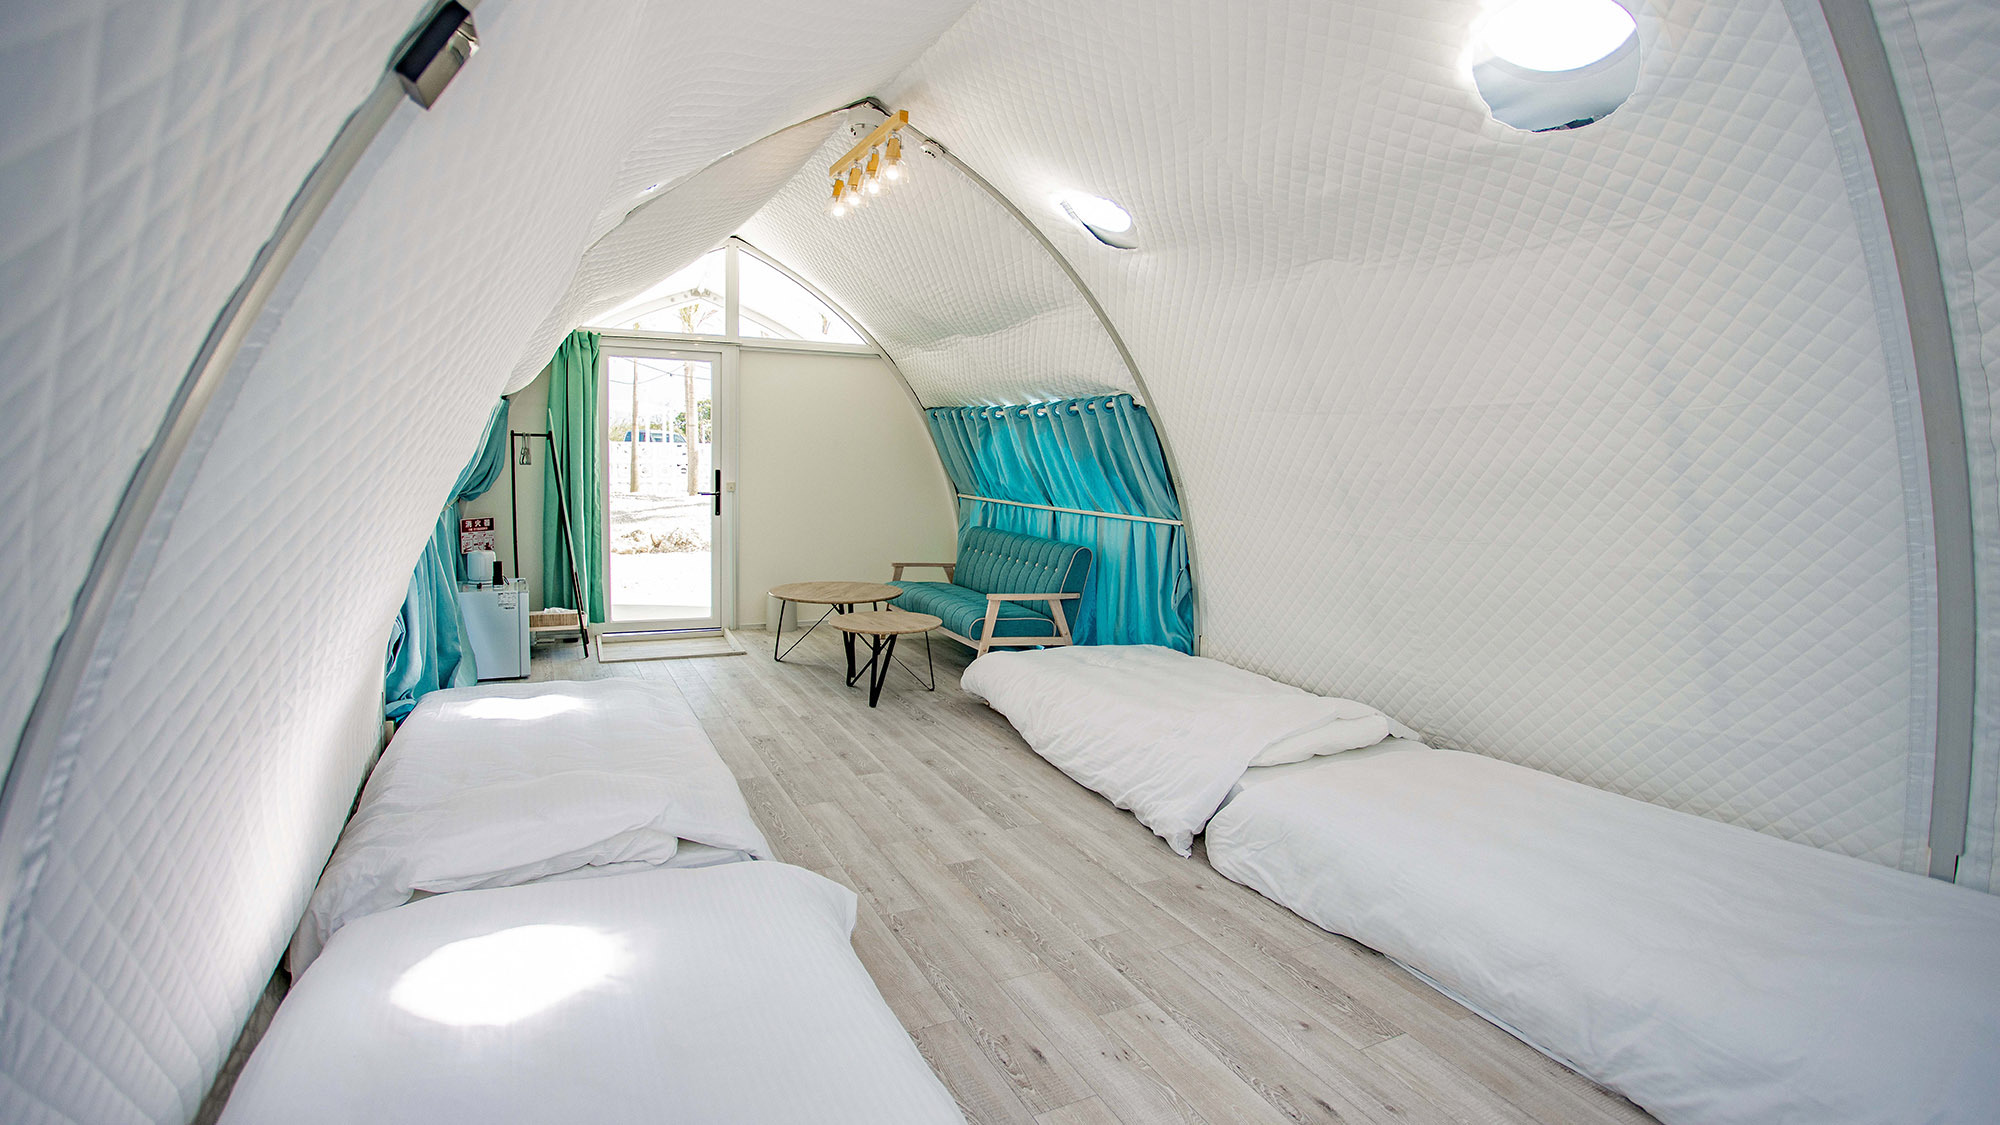 ・【グループドーム】ご宿泊の人数や用途に合わせた自由度の高い宿泊体験が可能です